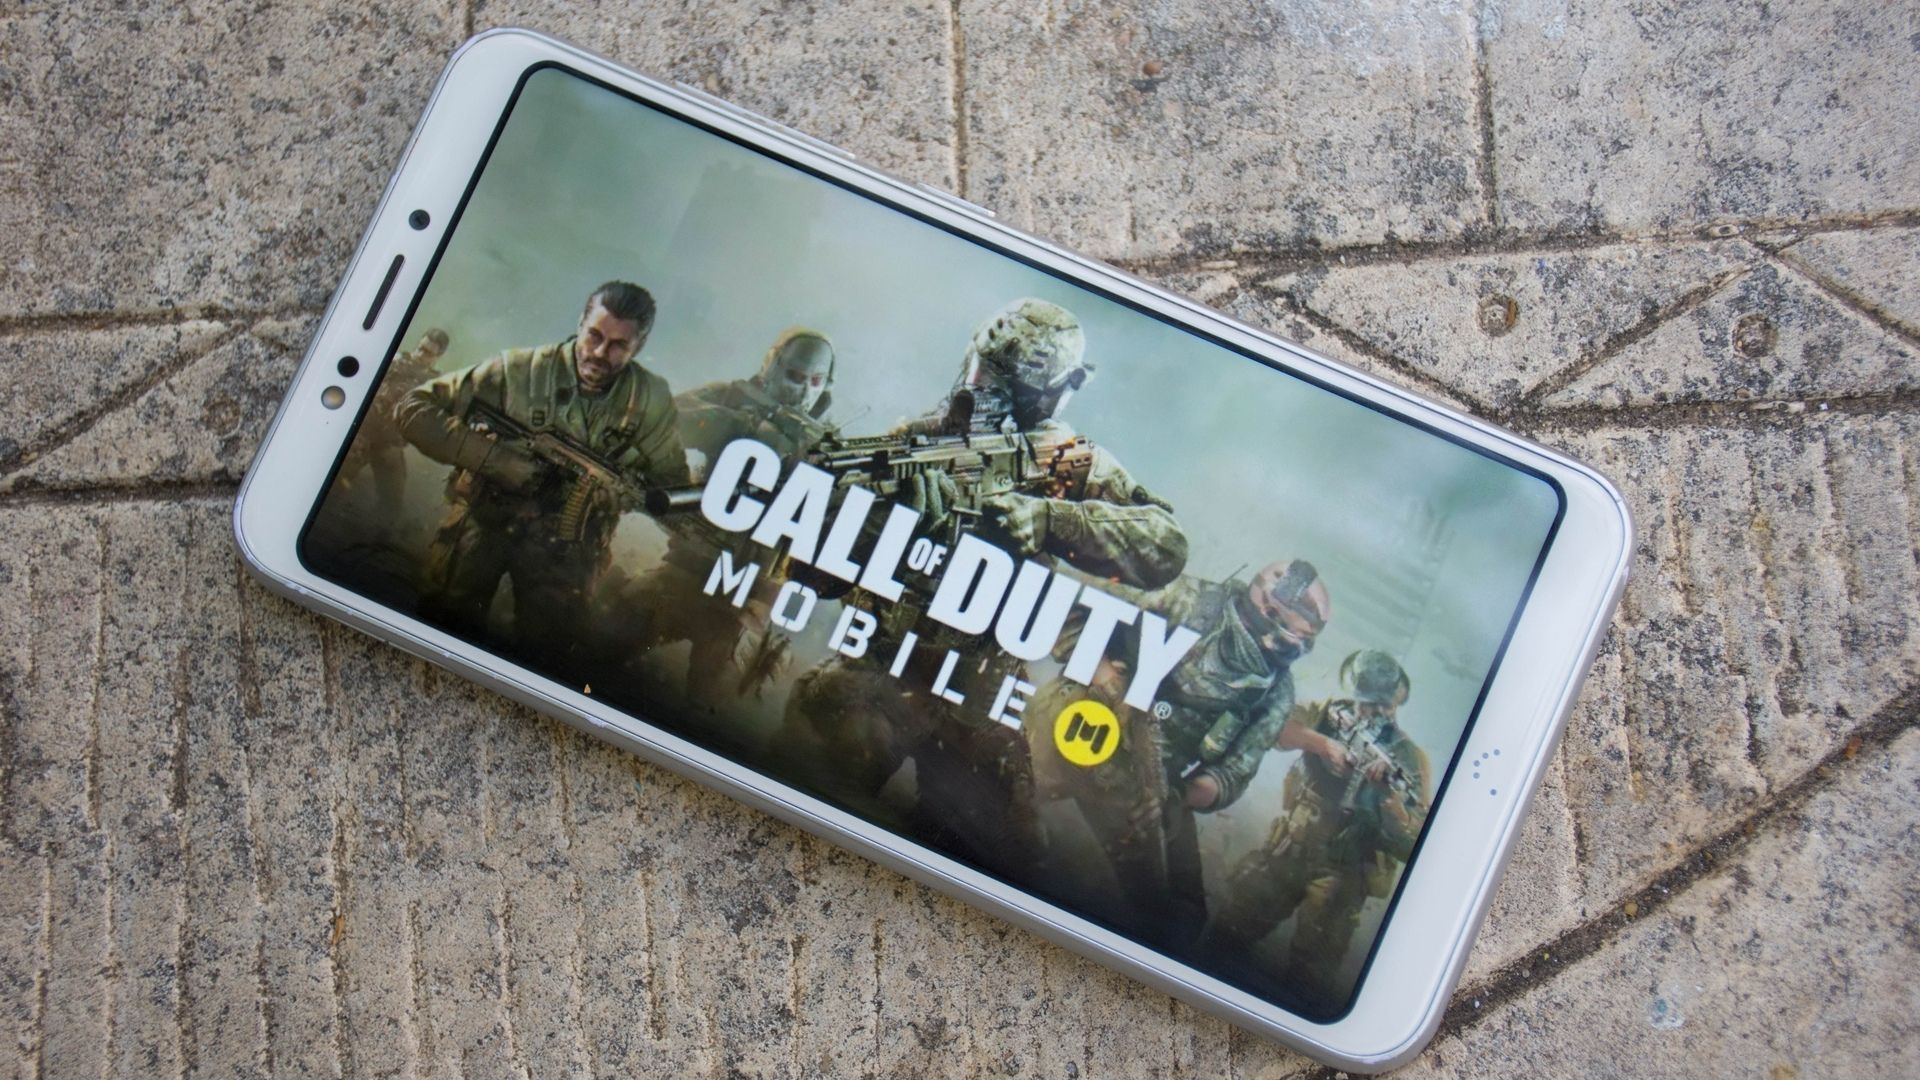 Call of Duty WARZONE Mobile: Requisitos para jogar e Celulares Compatíveis  - Mobile Gamer